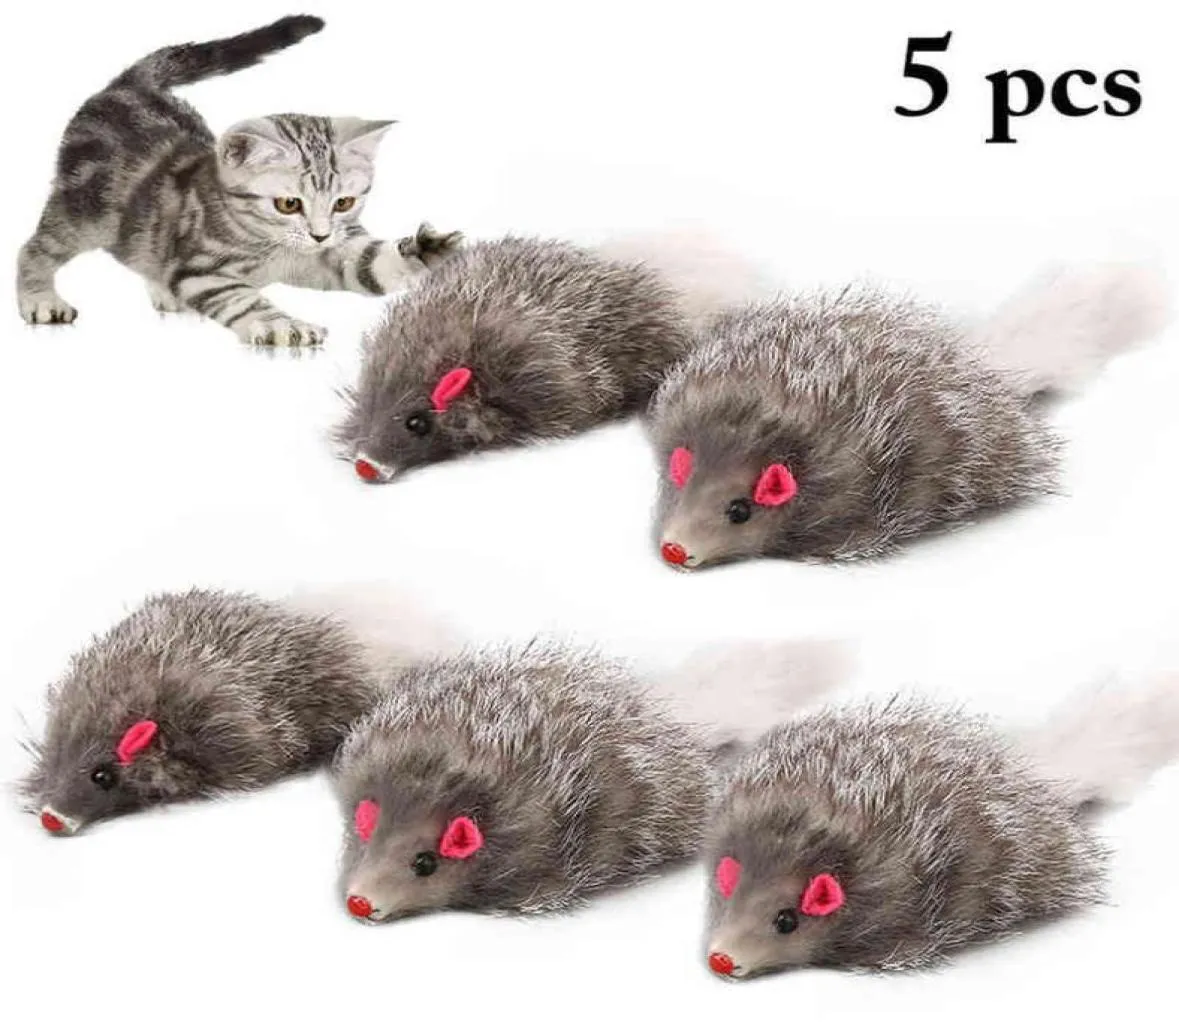 5PCS猫マウスおもちゃ誤ったマウス猫おもちゃロングテールマウスソフトリアルウサギファーおもちゃ猫のぬいぐるみぬいぐるみ